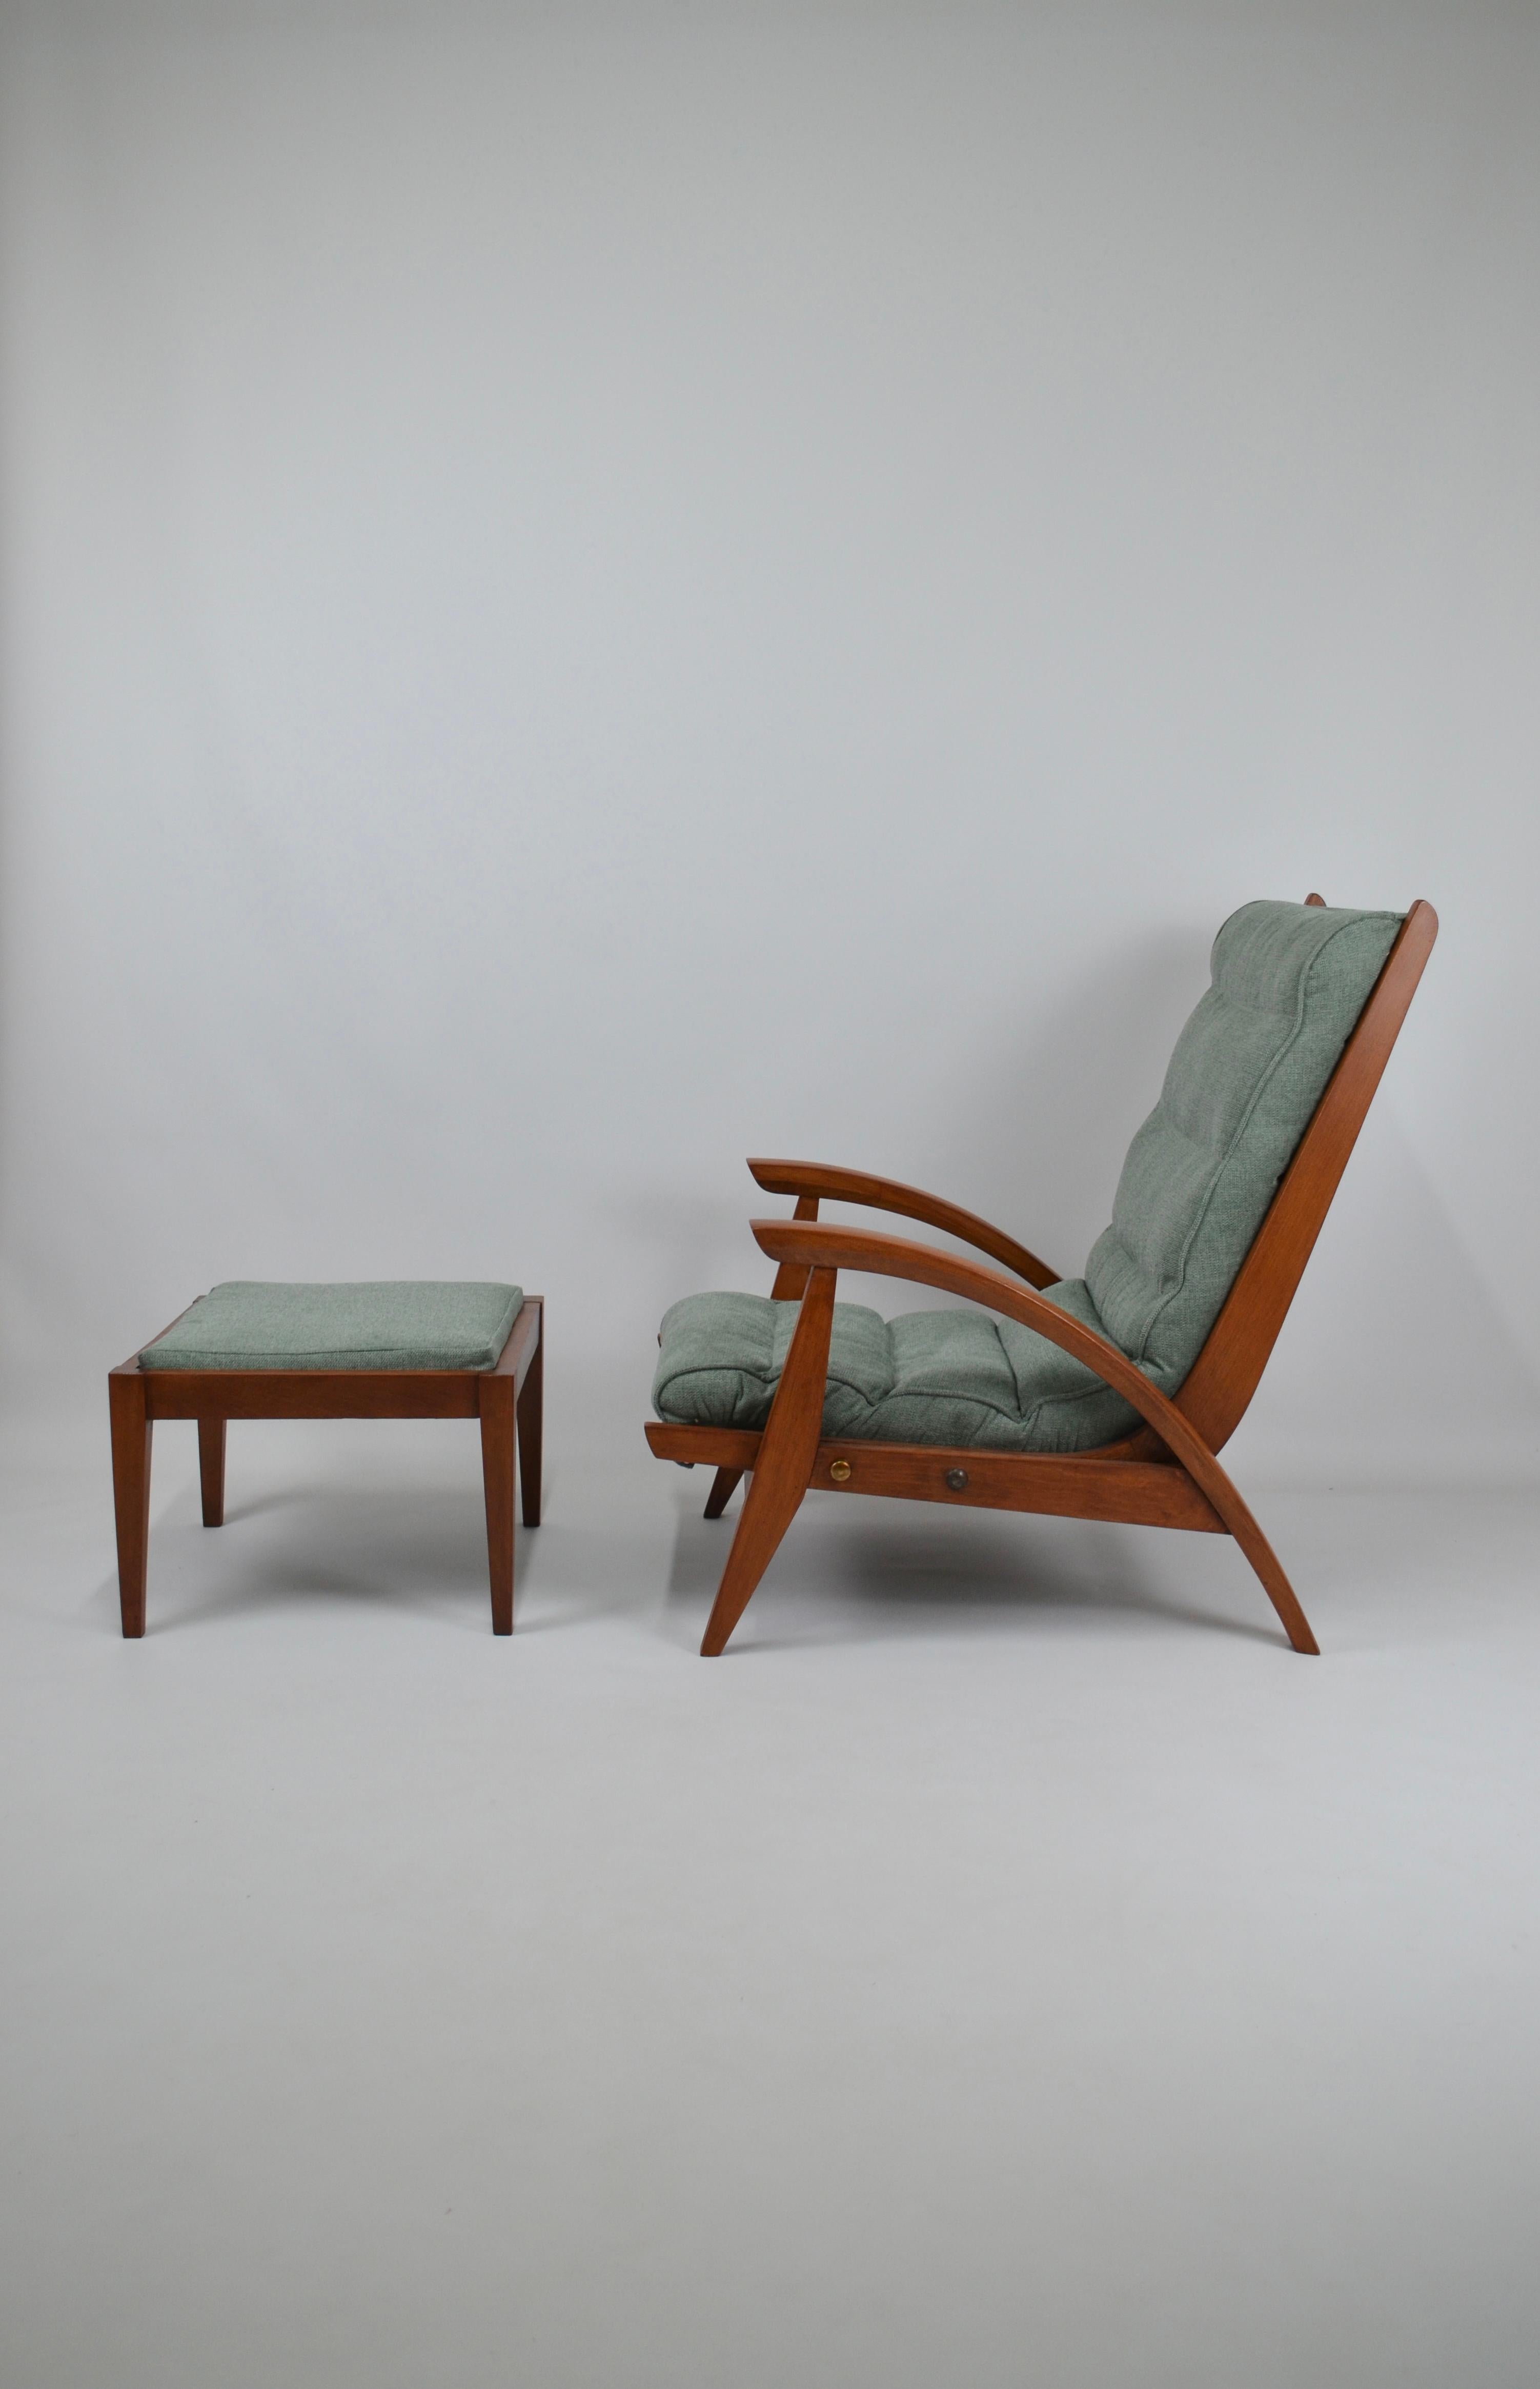 Seltener modernistischer Sessel mit Ottomane, in massiver Eiche, von Guy Besnard, für Freespan Modell 